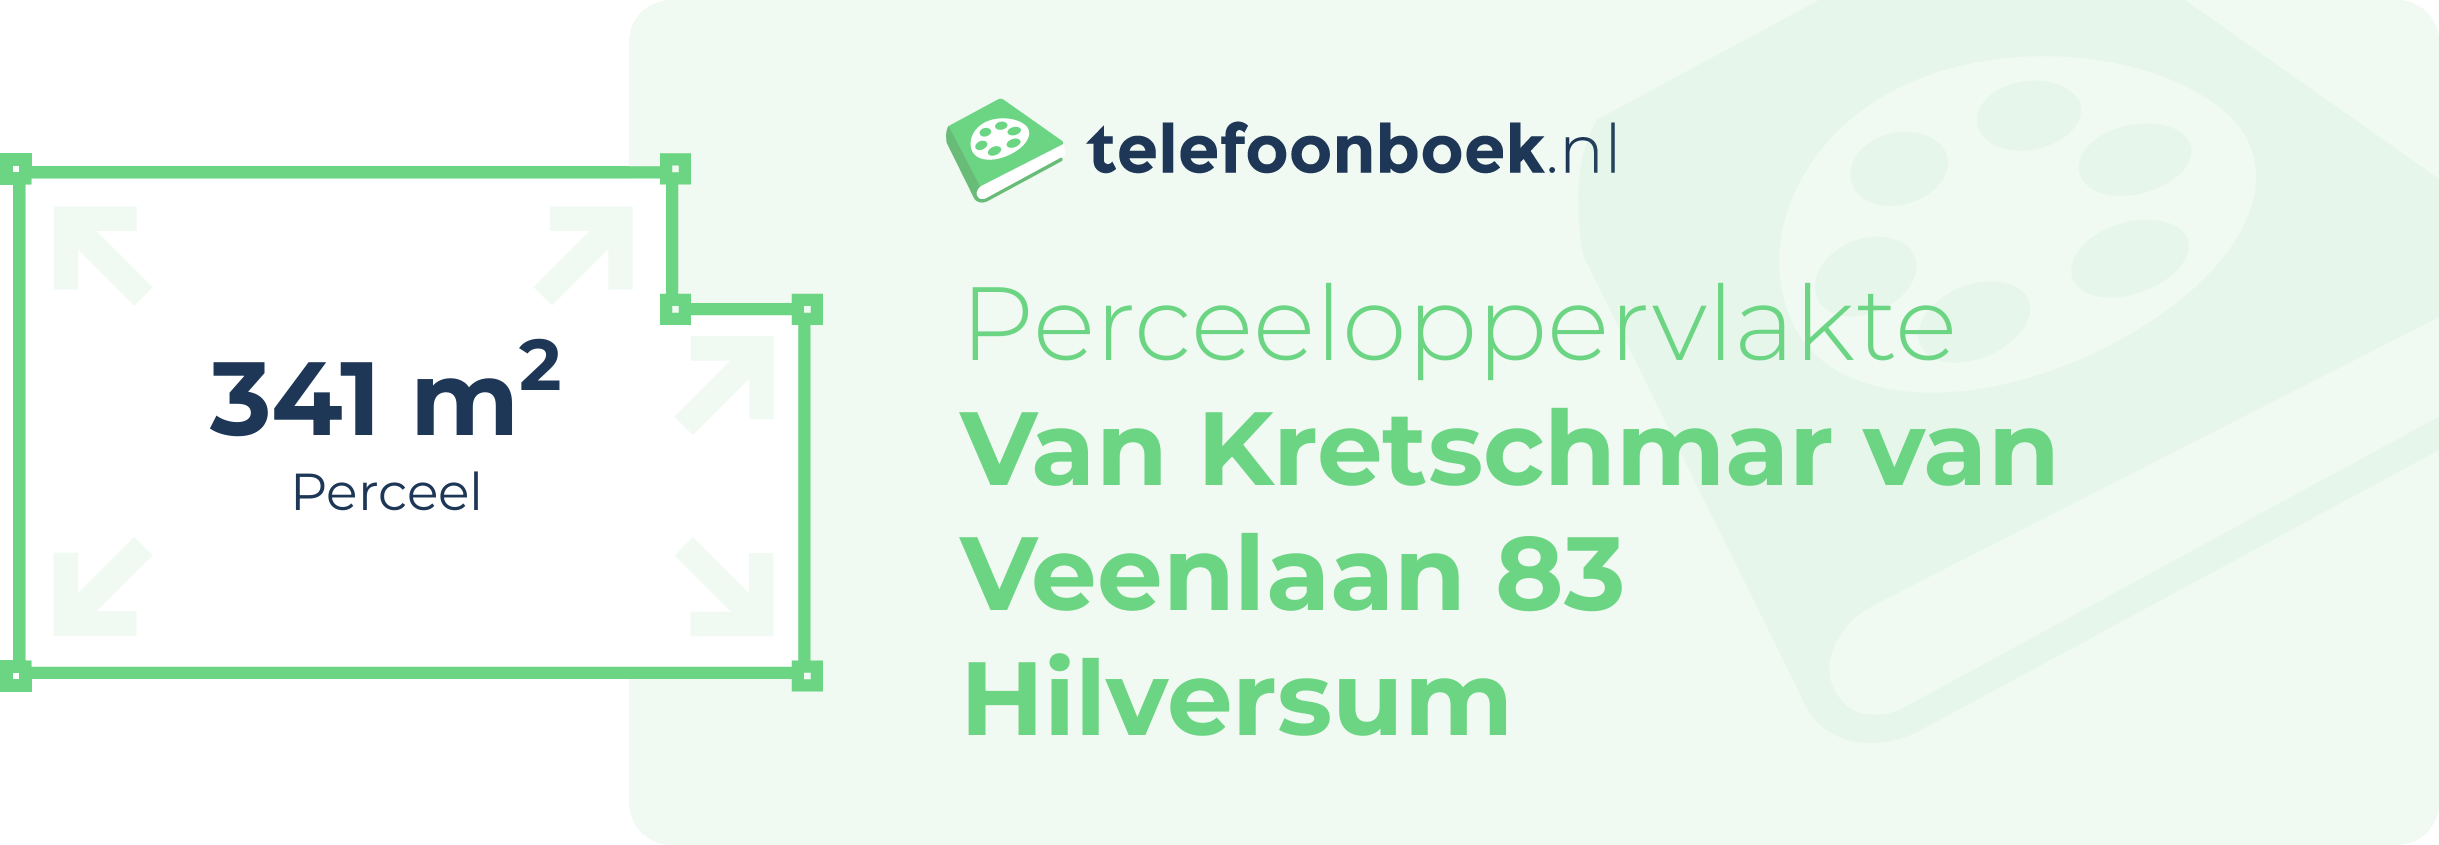 Perceeloppervlakte Van Kretschmar Van Veenlaan 83 Hilversum